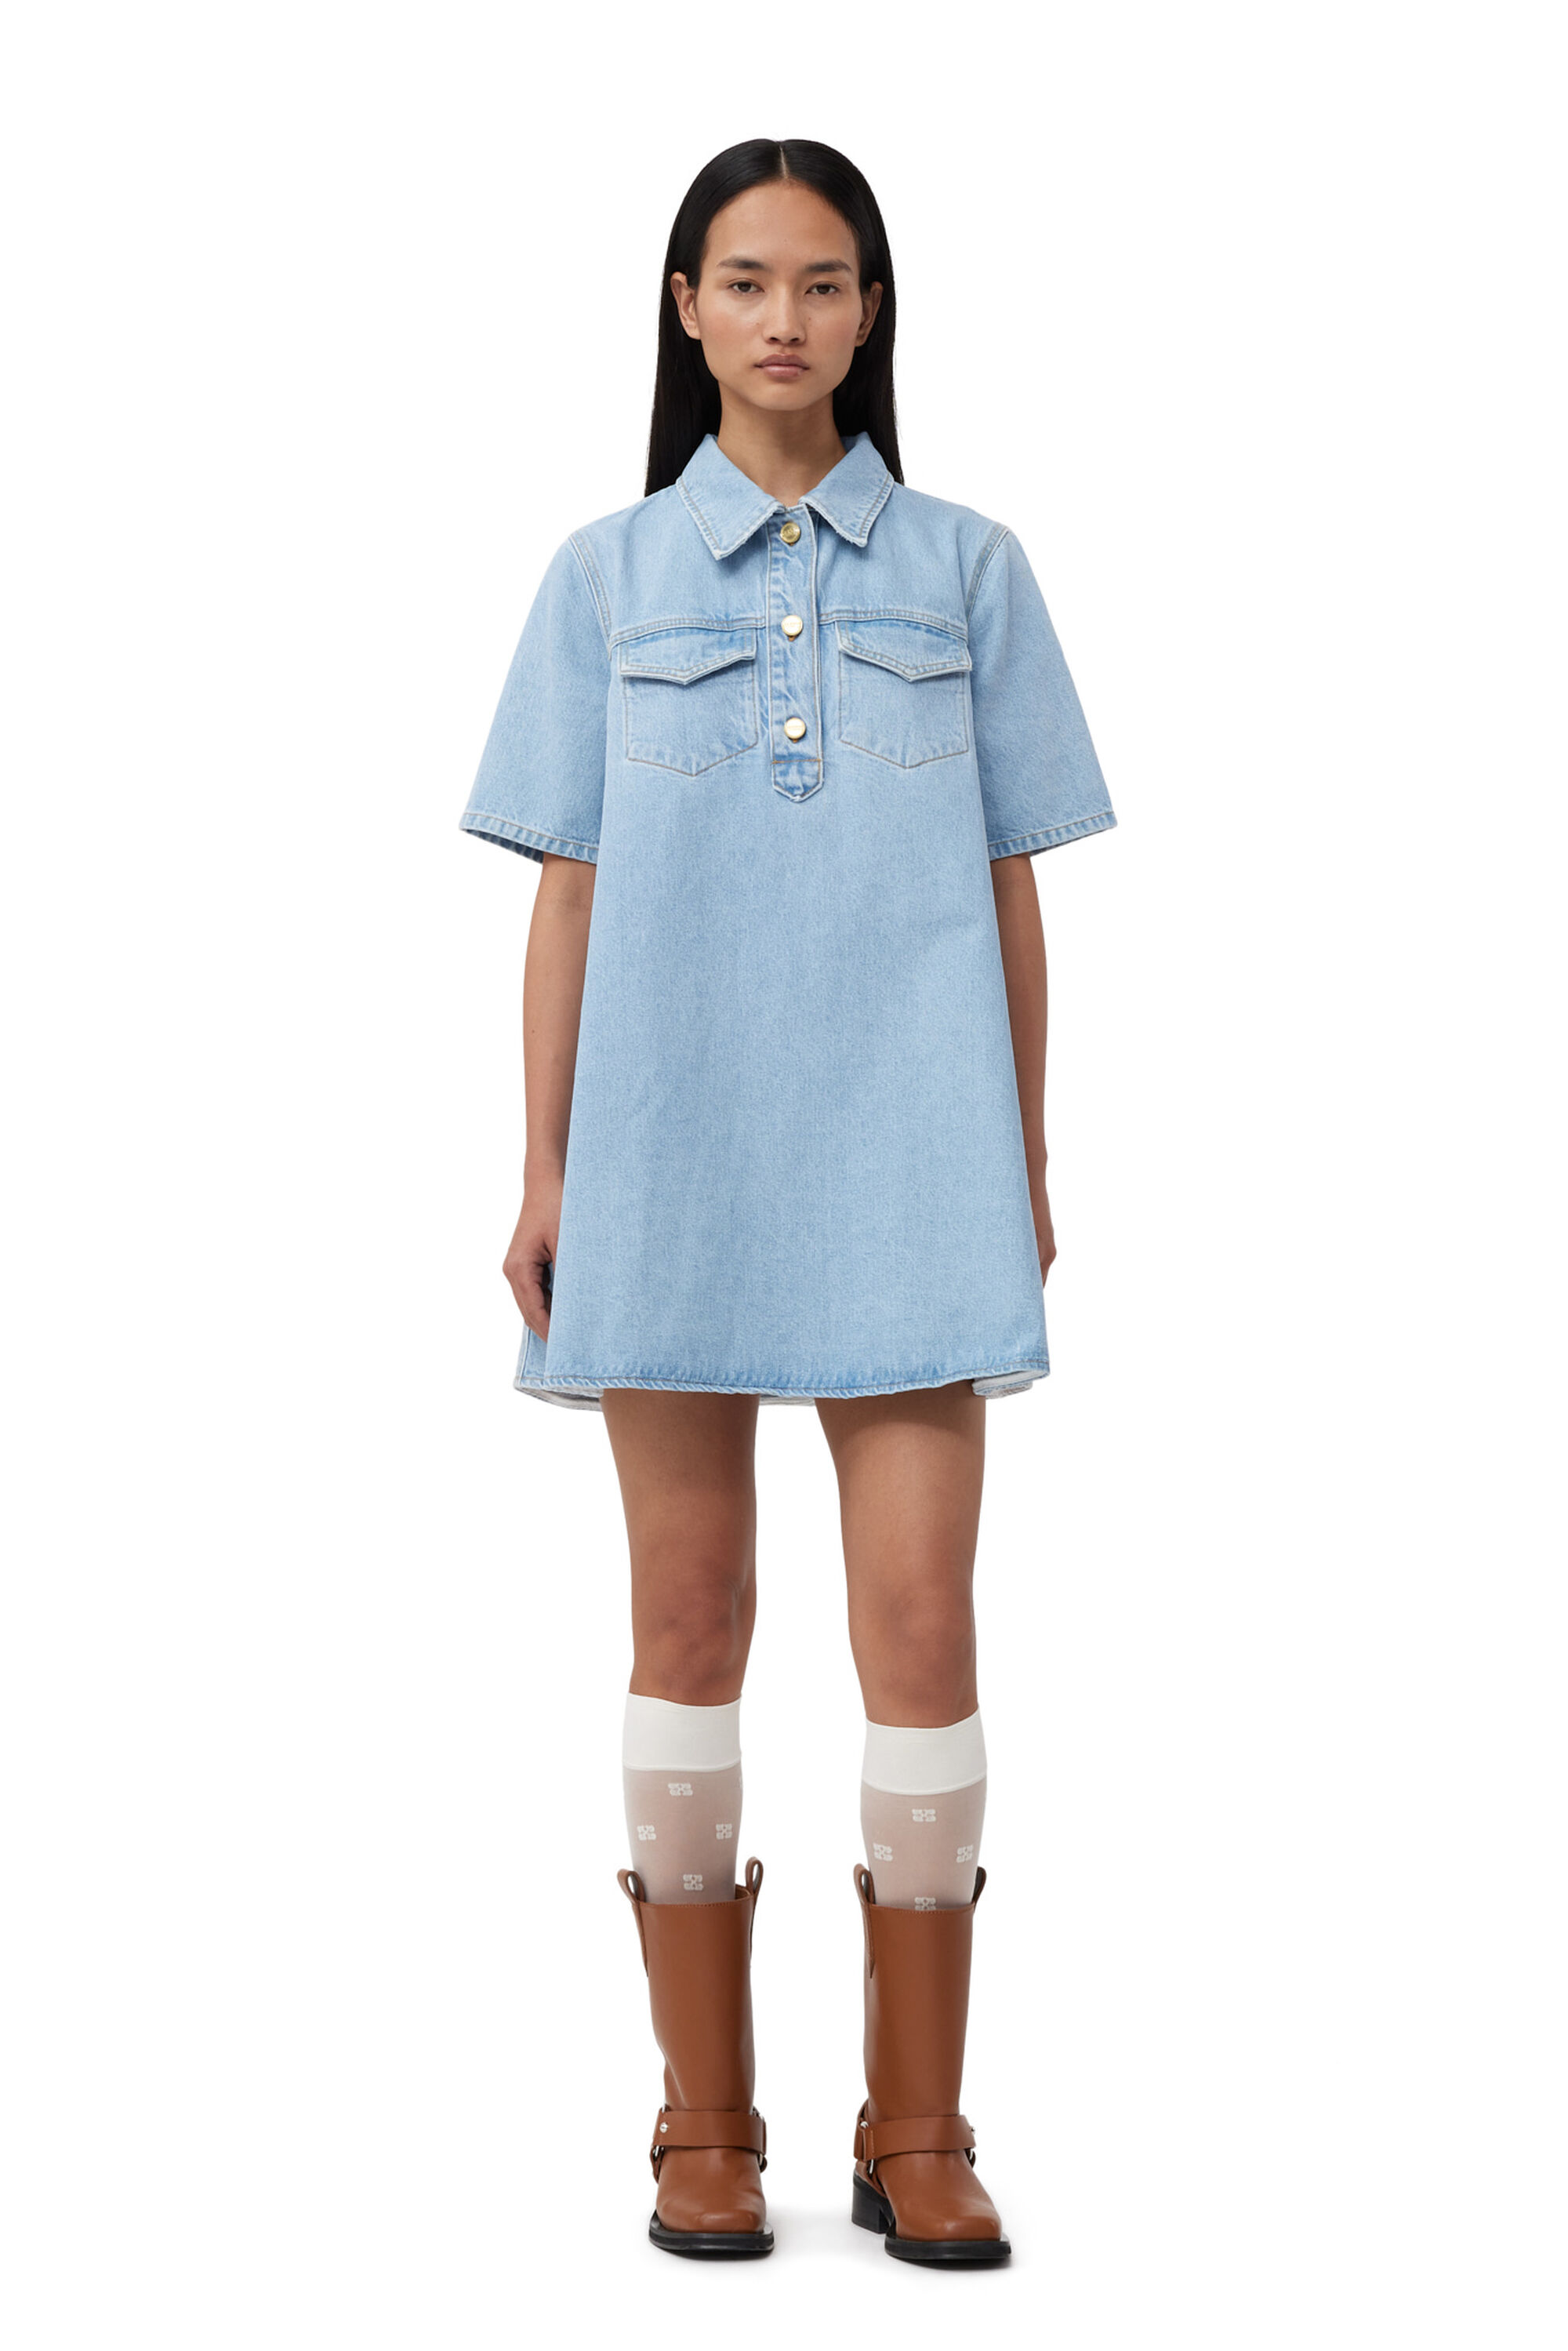 Light Blue Denim Dress - Denim Mini Dress - Cutout Dress - Lulus